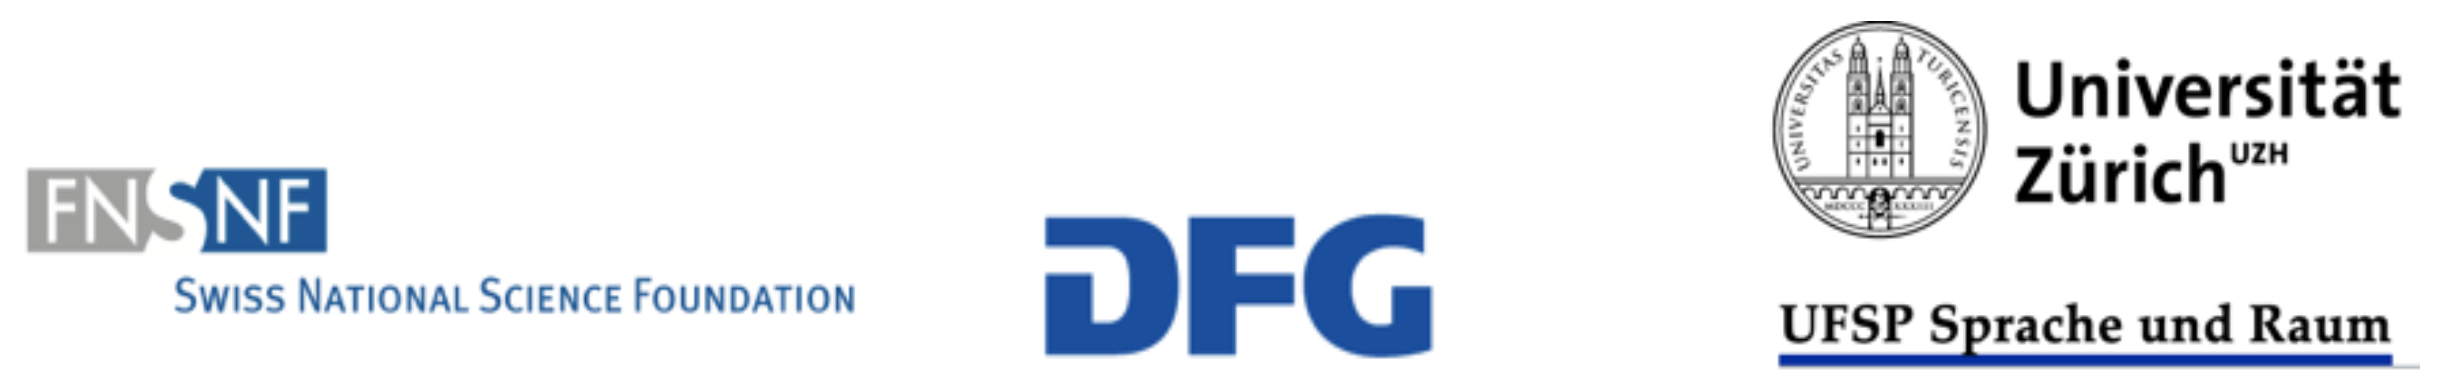 Logos FN DFG UZH